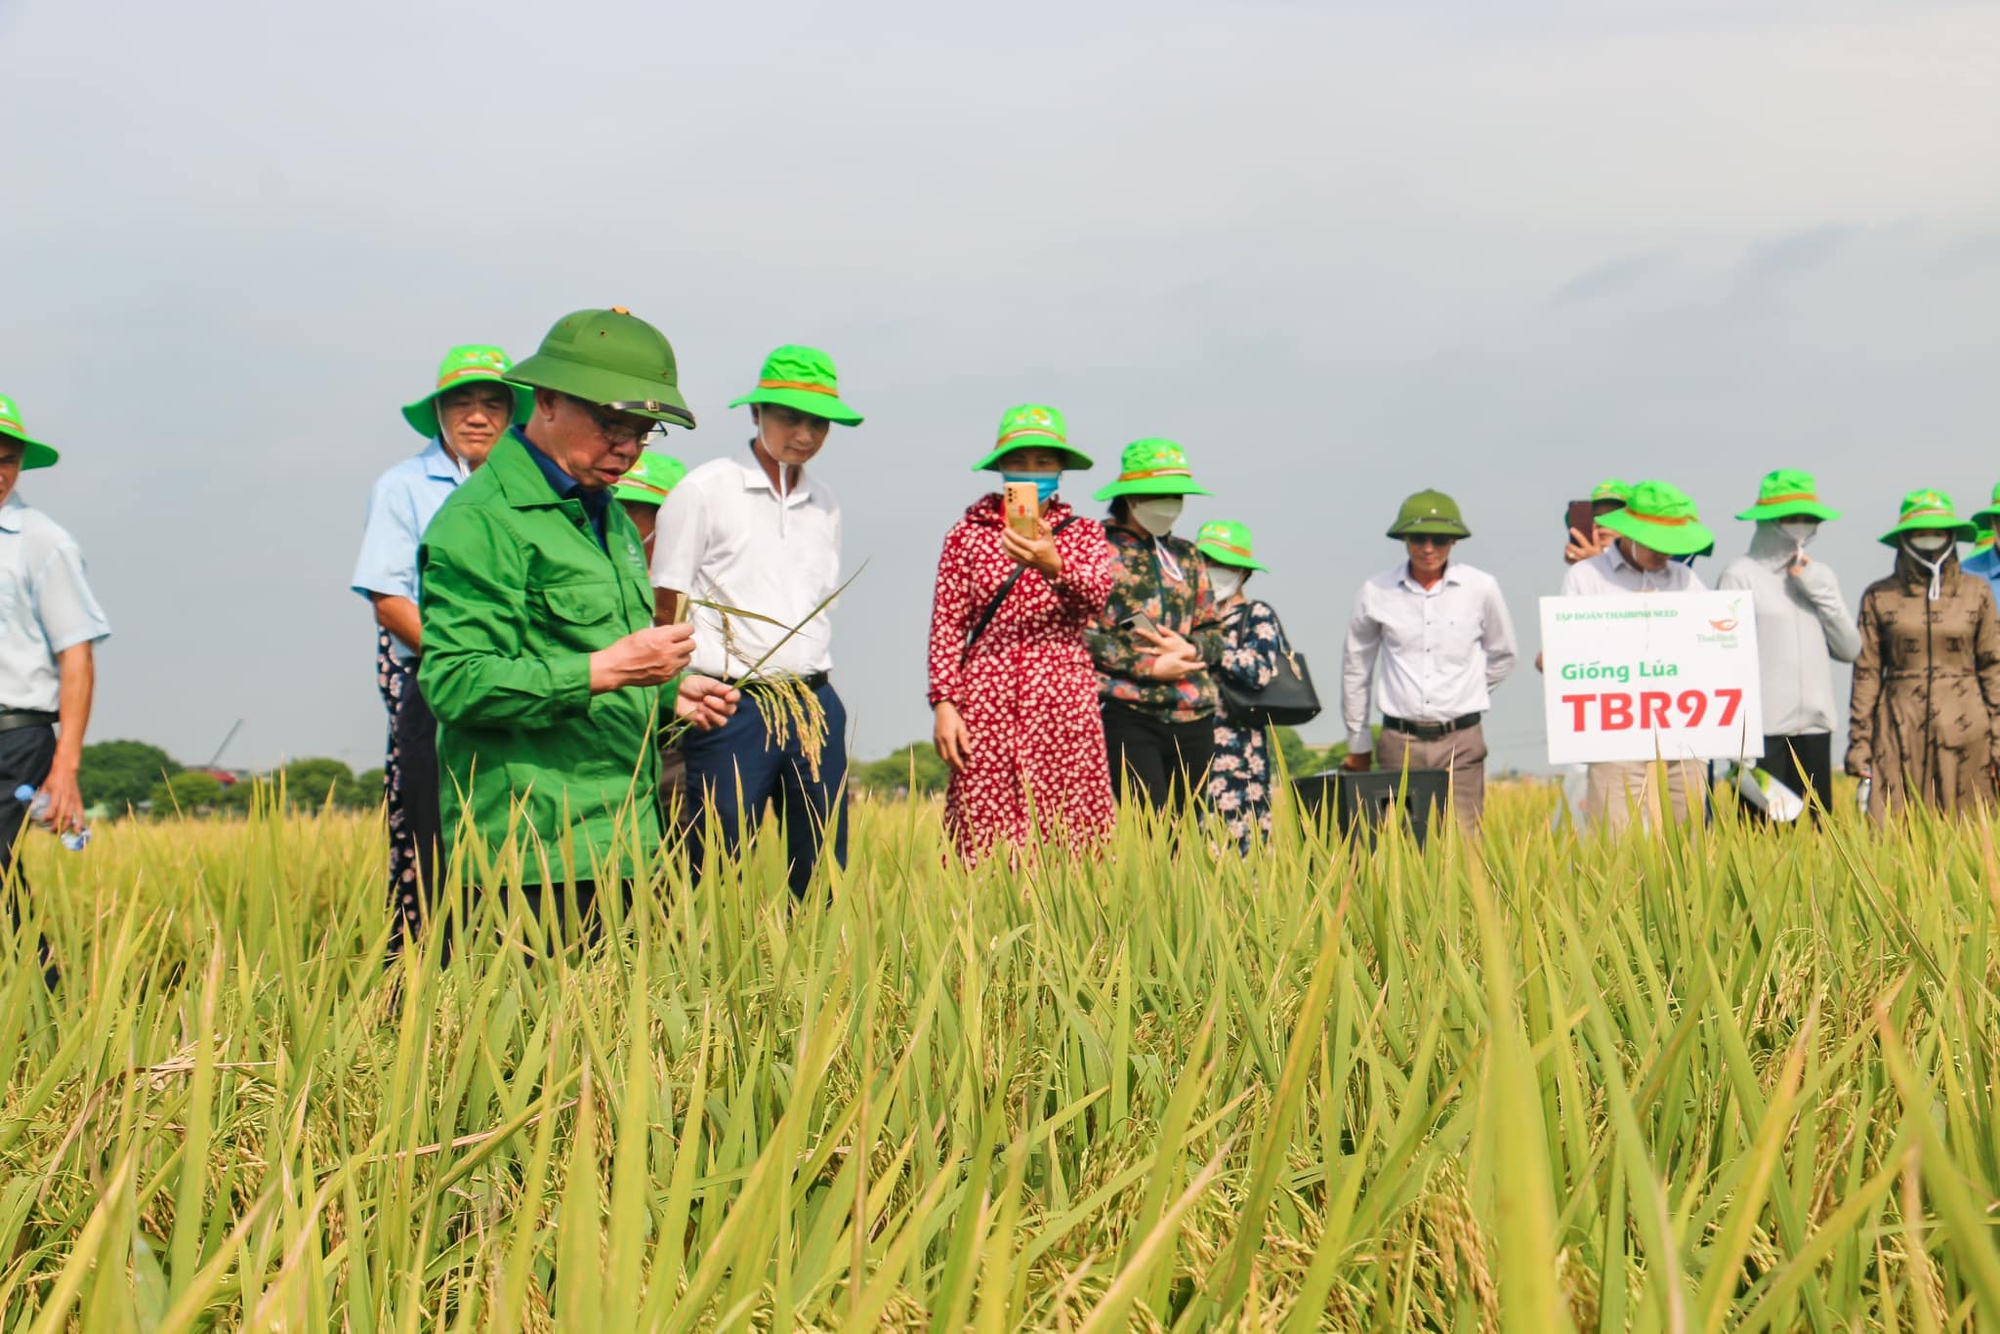 Giống lúa TBR97 của ThaiBinh Seed hứa hẹn là quả &quot;bom tấn&quot; trong sản xuất lúa trên cả nước - Ảnh 1.